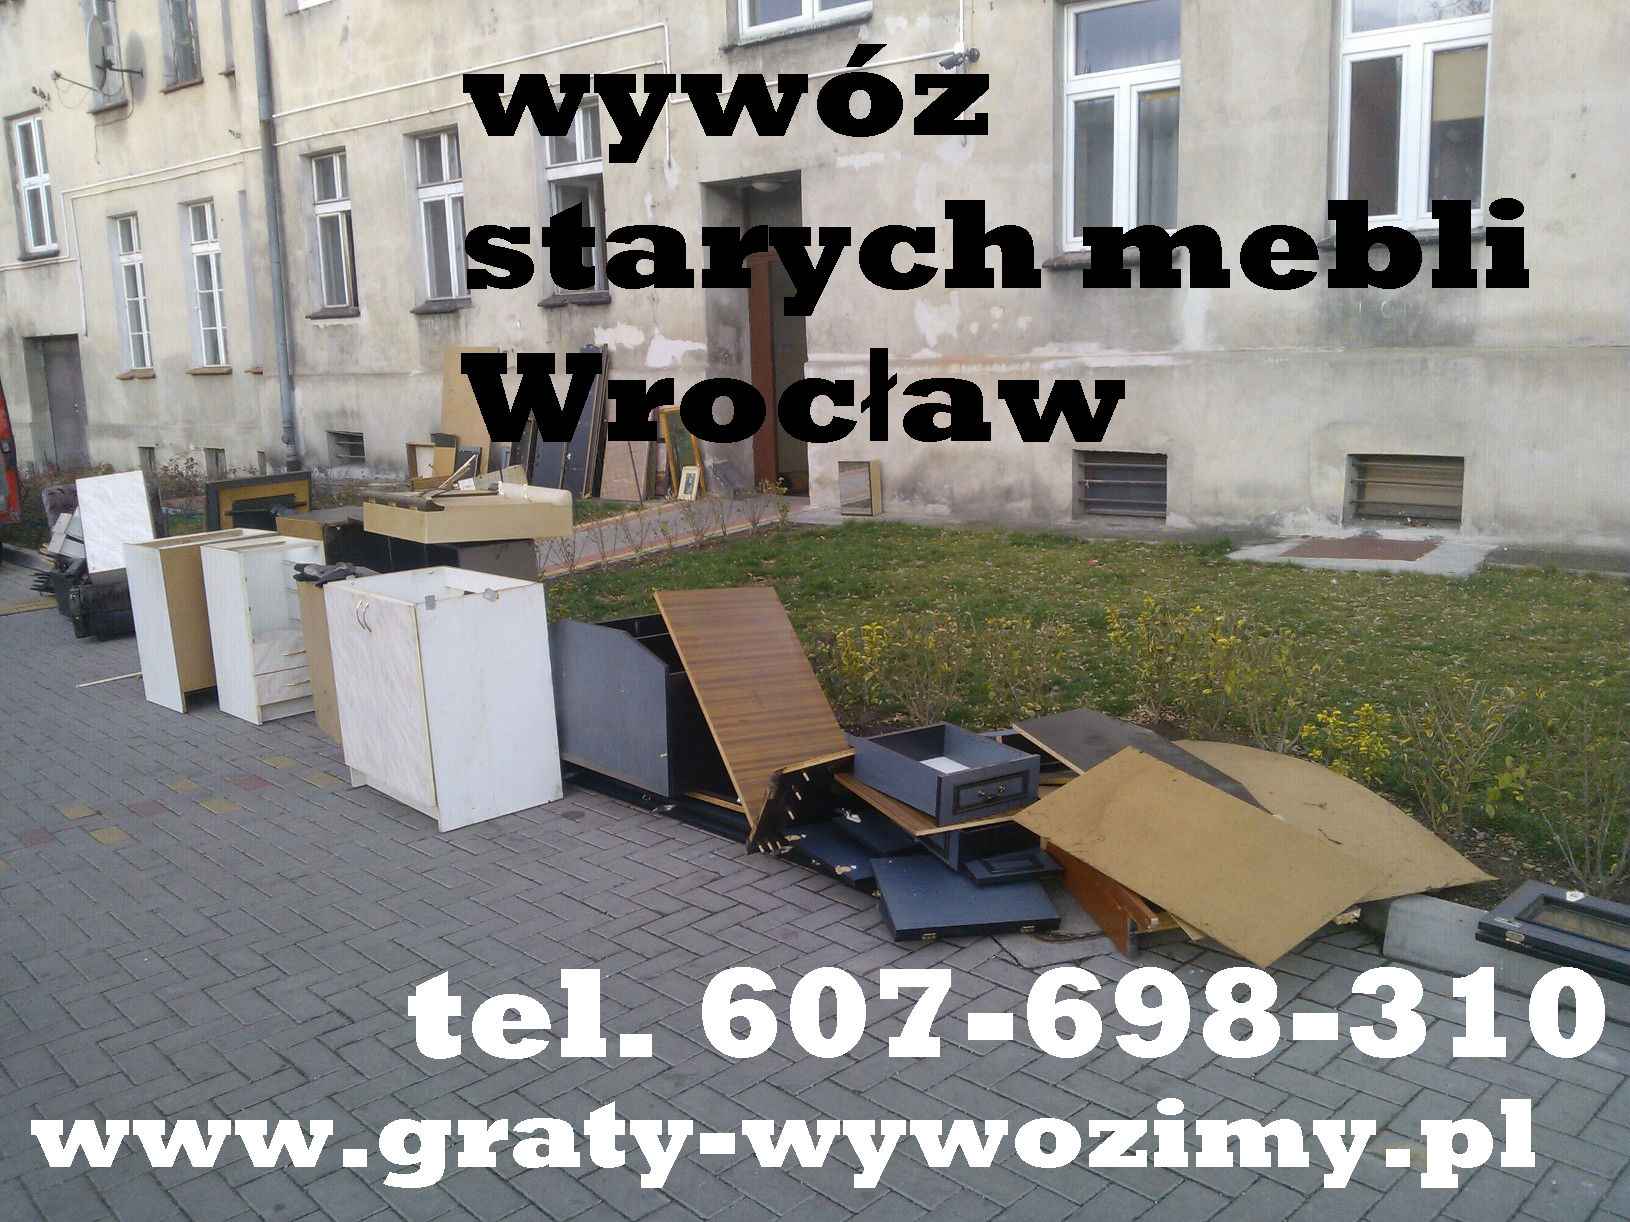 Wywóz starych mebli,gratów Wrocław,opróżnianie mieszkań,piwnic Wrocław Fabryczna - zdjęcie 1